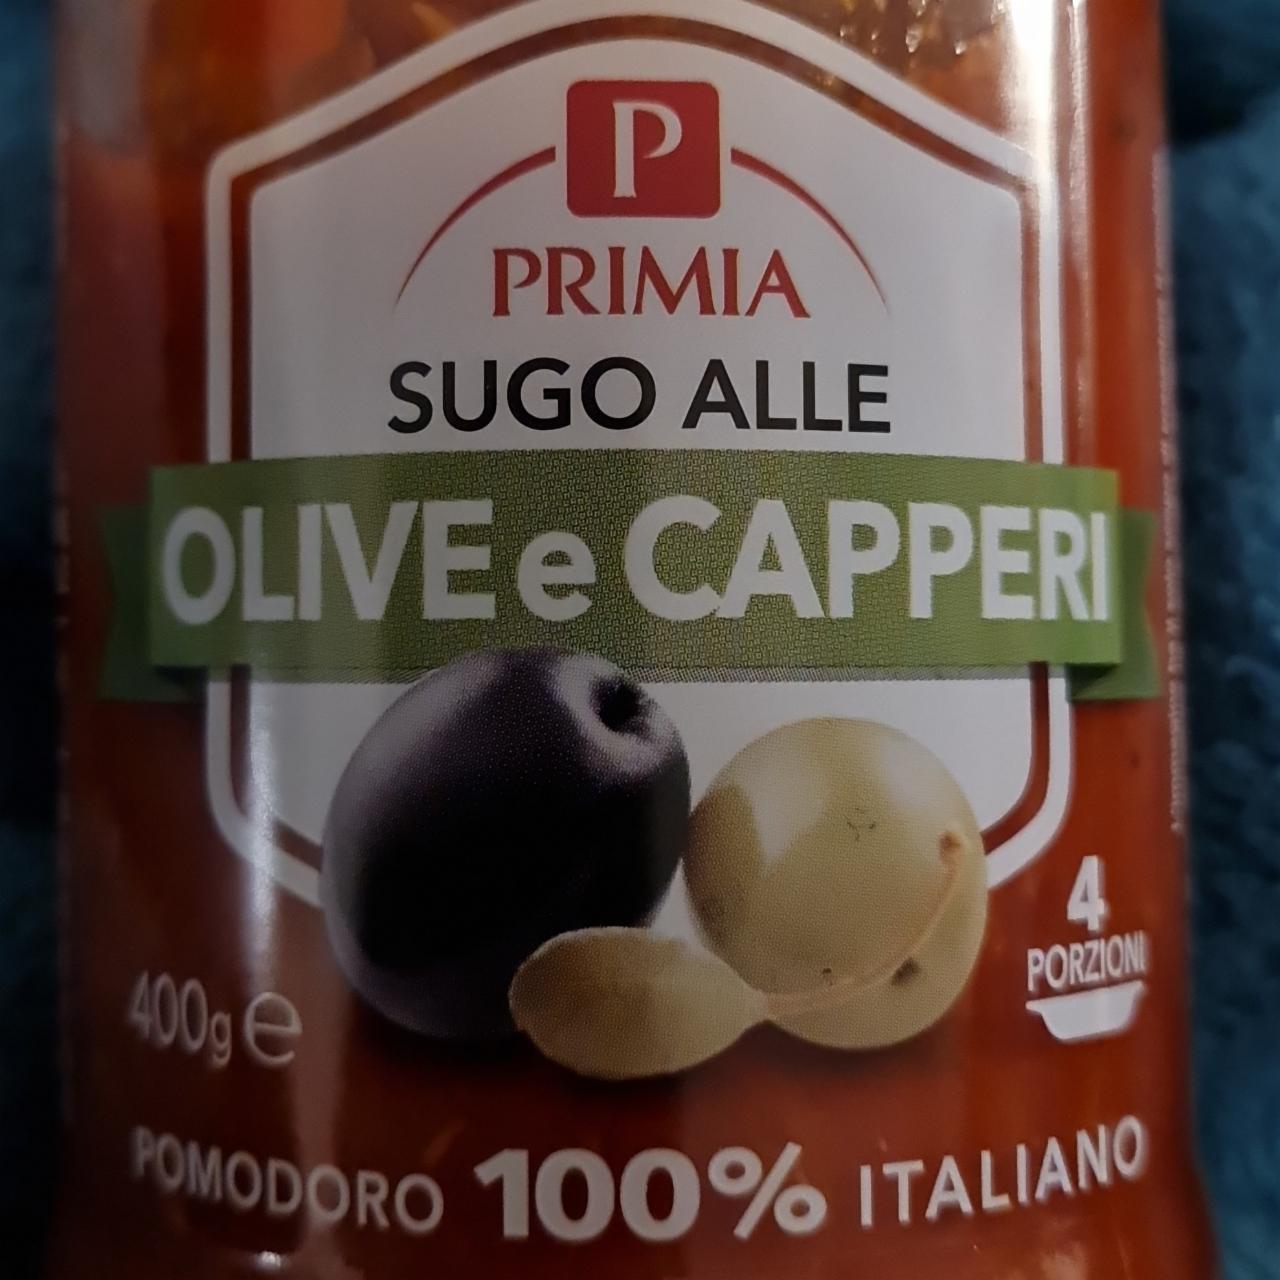 Fotografie - Sugo alle olive e capperi Primia